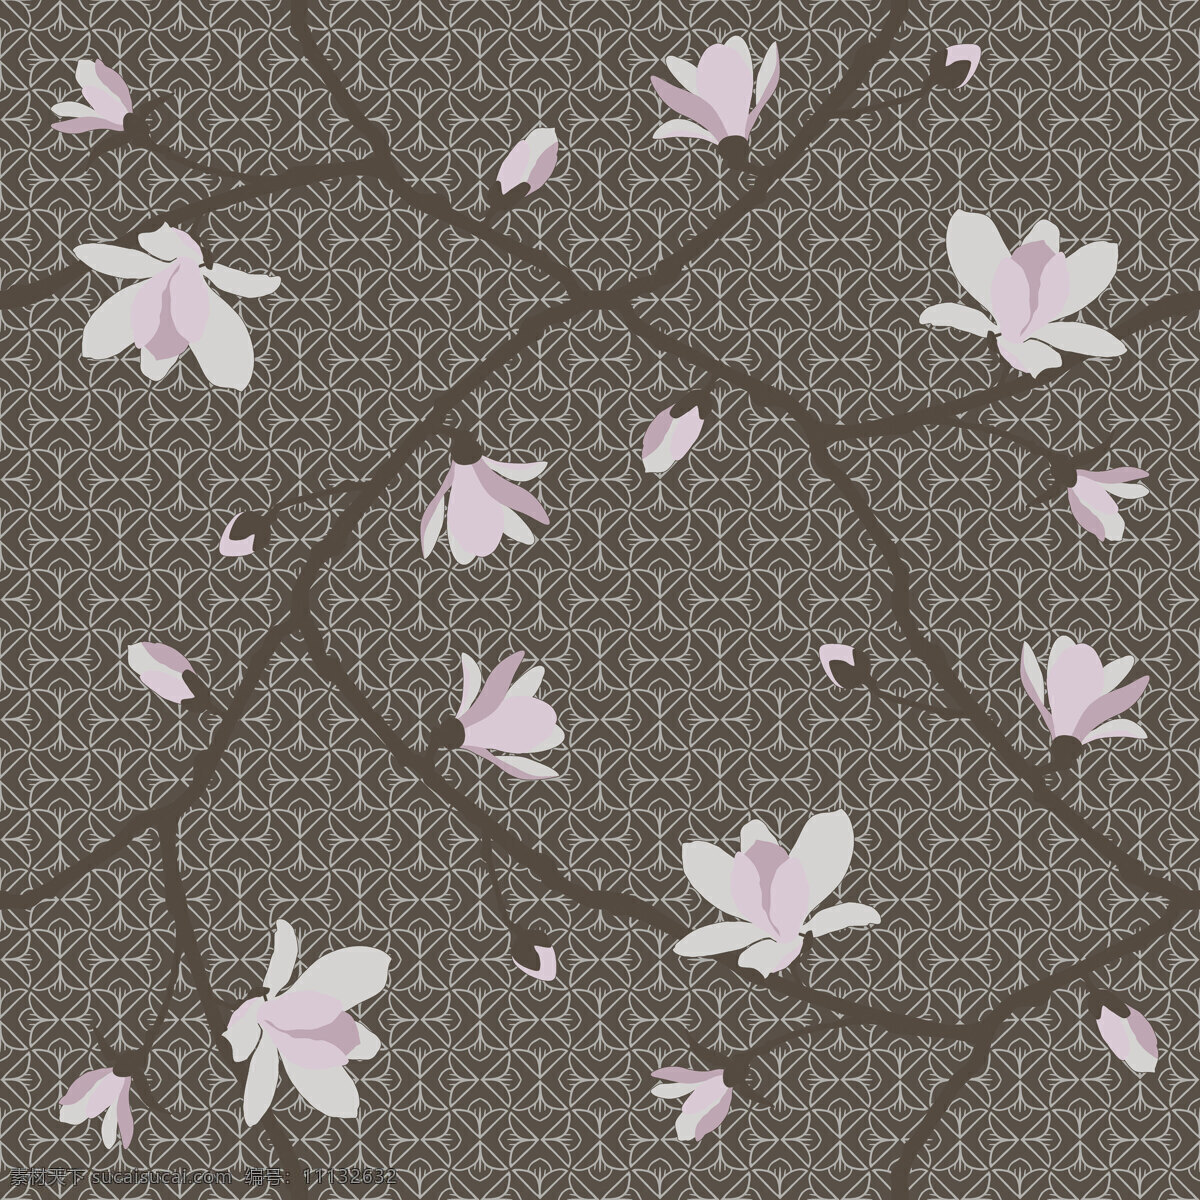 经典 典雅 深灰色 花纹 壁纸 图案 壁纸图案 淡紫色花朵 花朵壁纸 深色底纹 植物元素